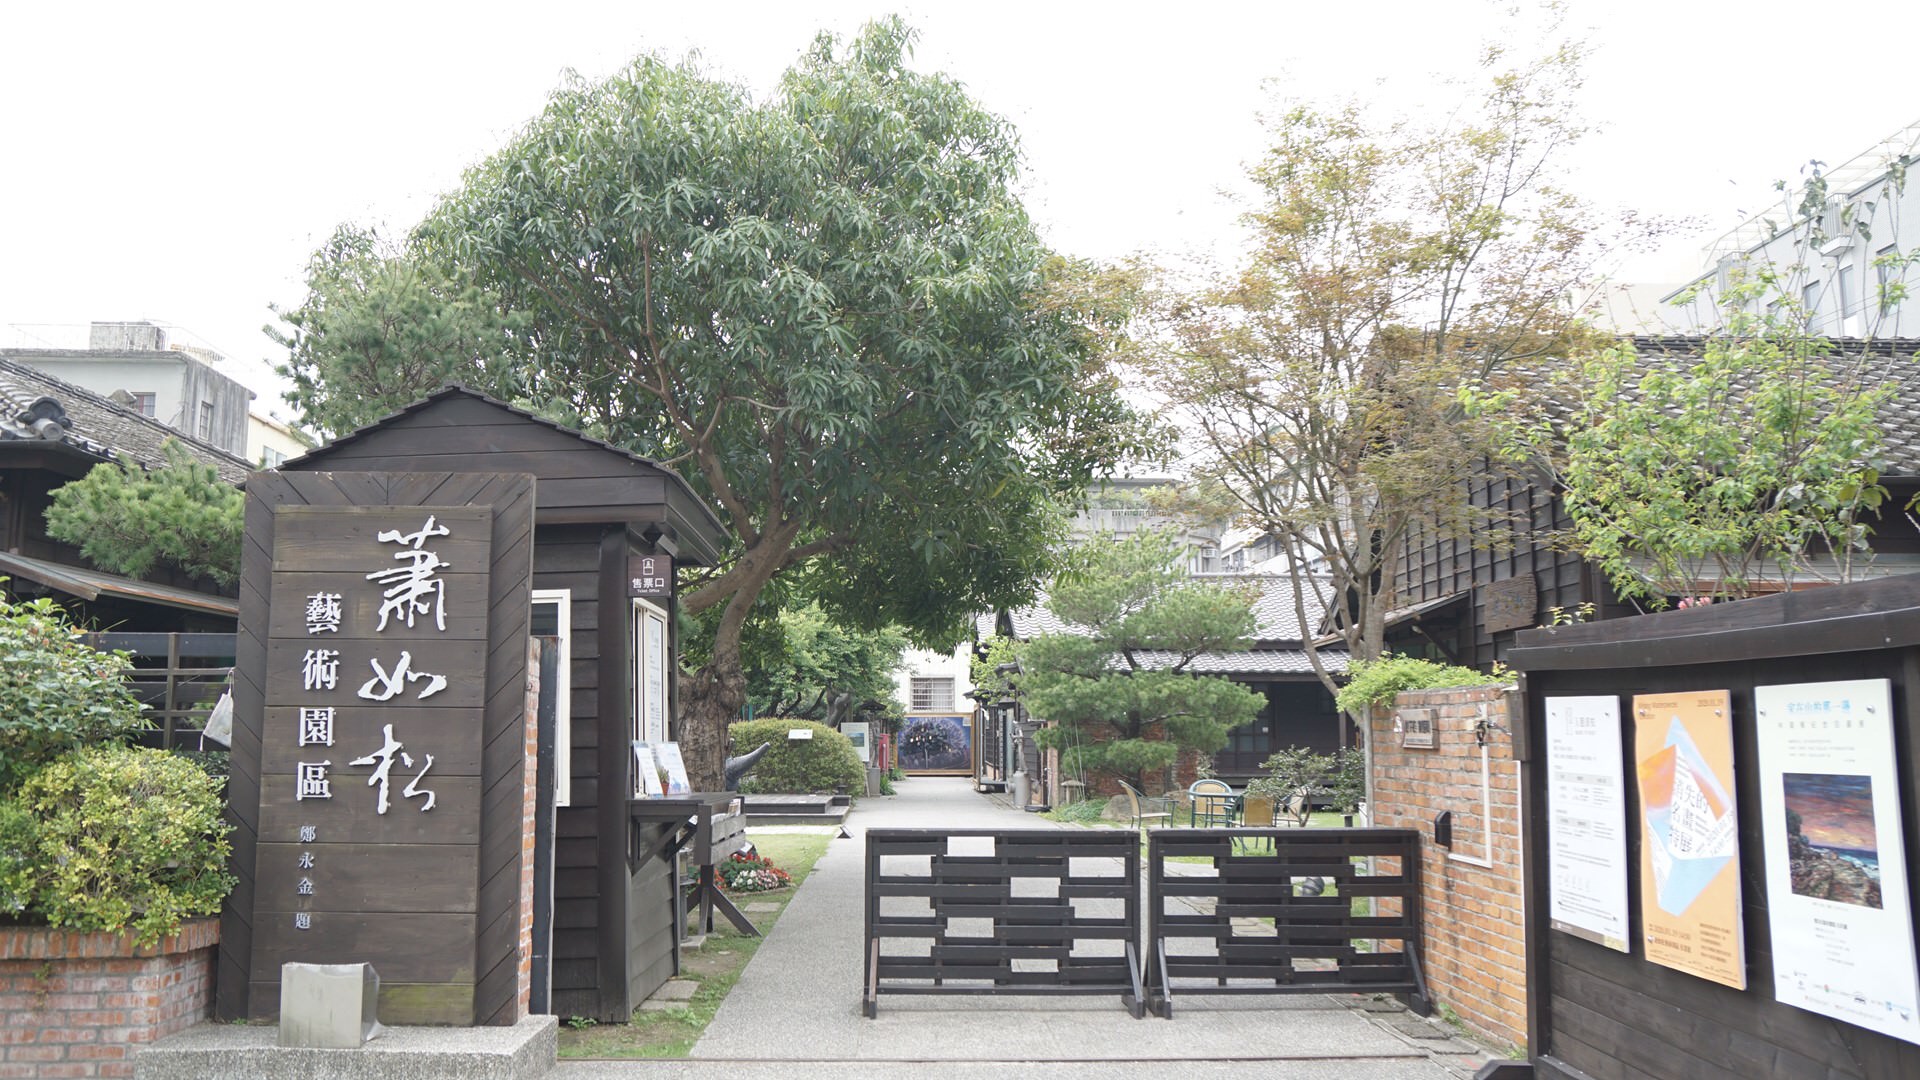 四方青松茶屋：蕭如松藝術園區餐廳，竹東美食：新竹日式老宅餐廳！輕鬆享受慢午茶時光